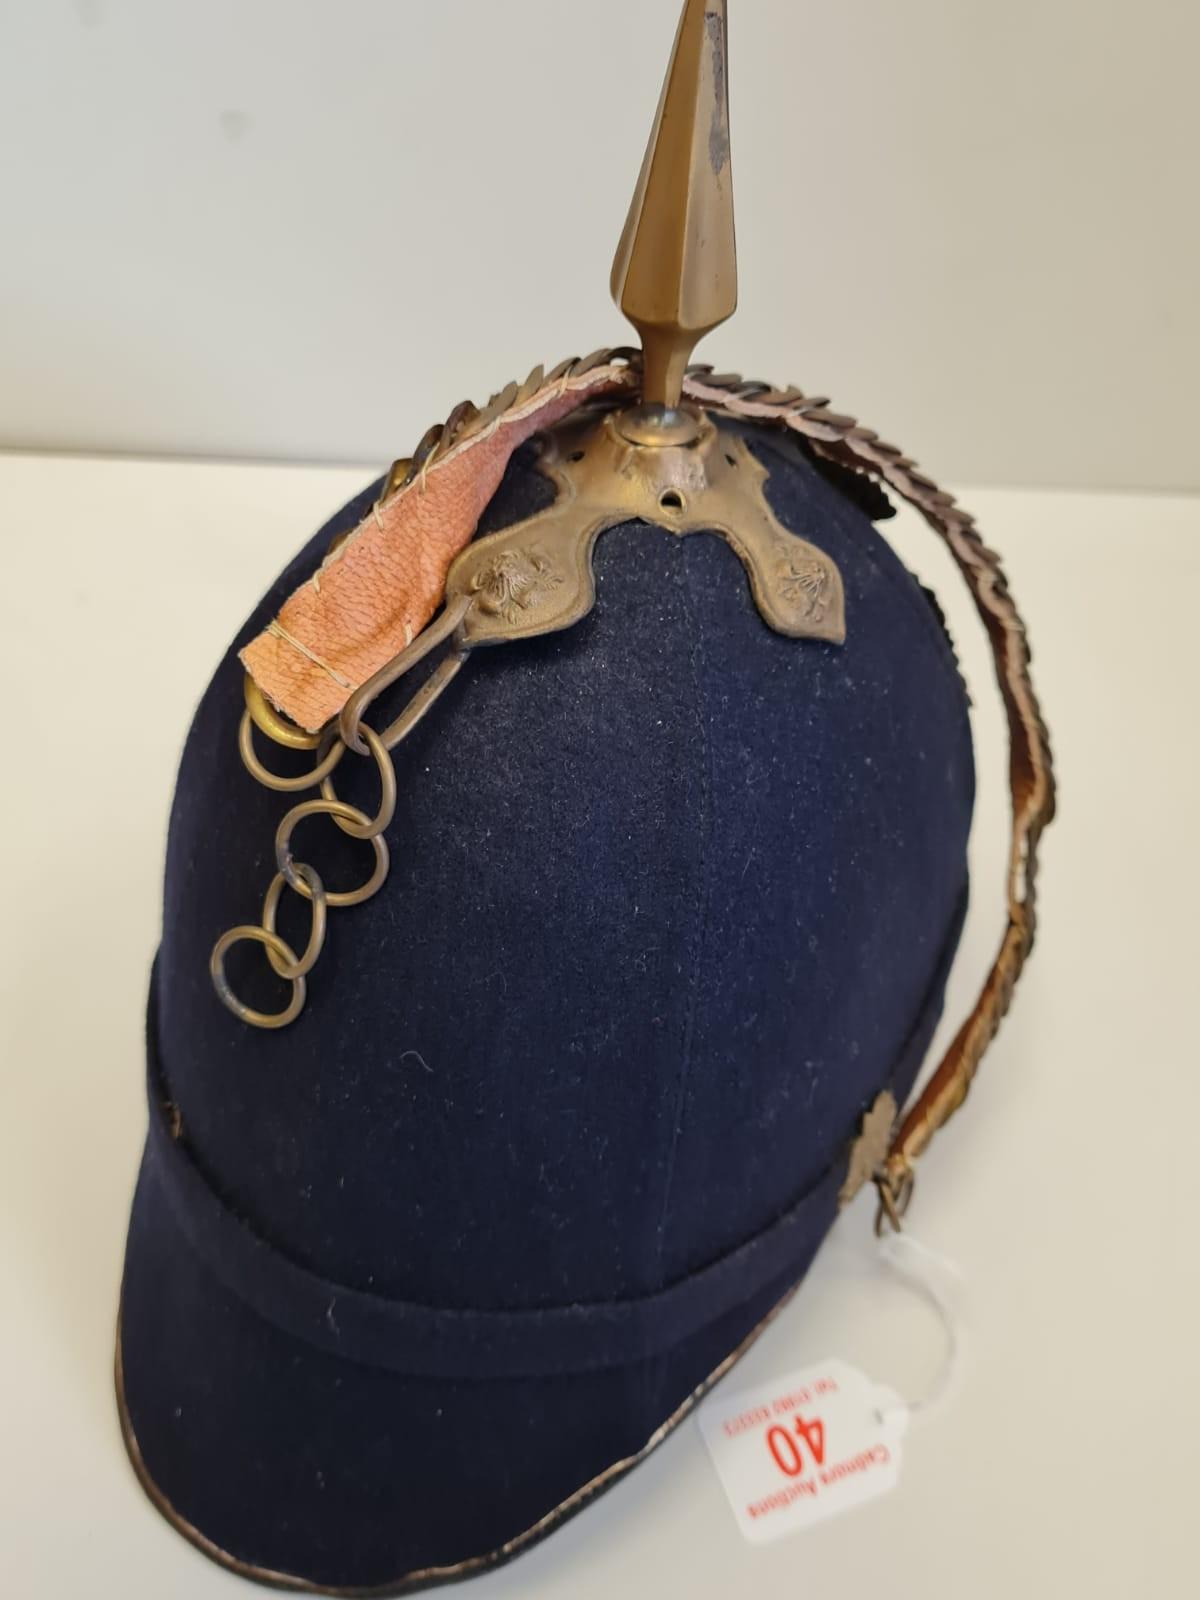 Bluecloth Privates Essex Regment Hat - Image 2 of 6